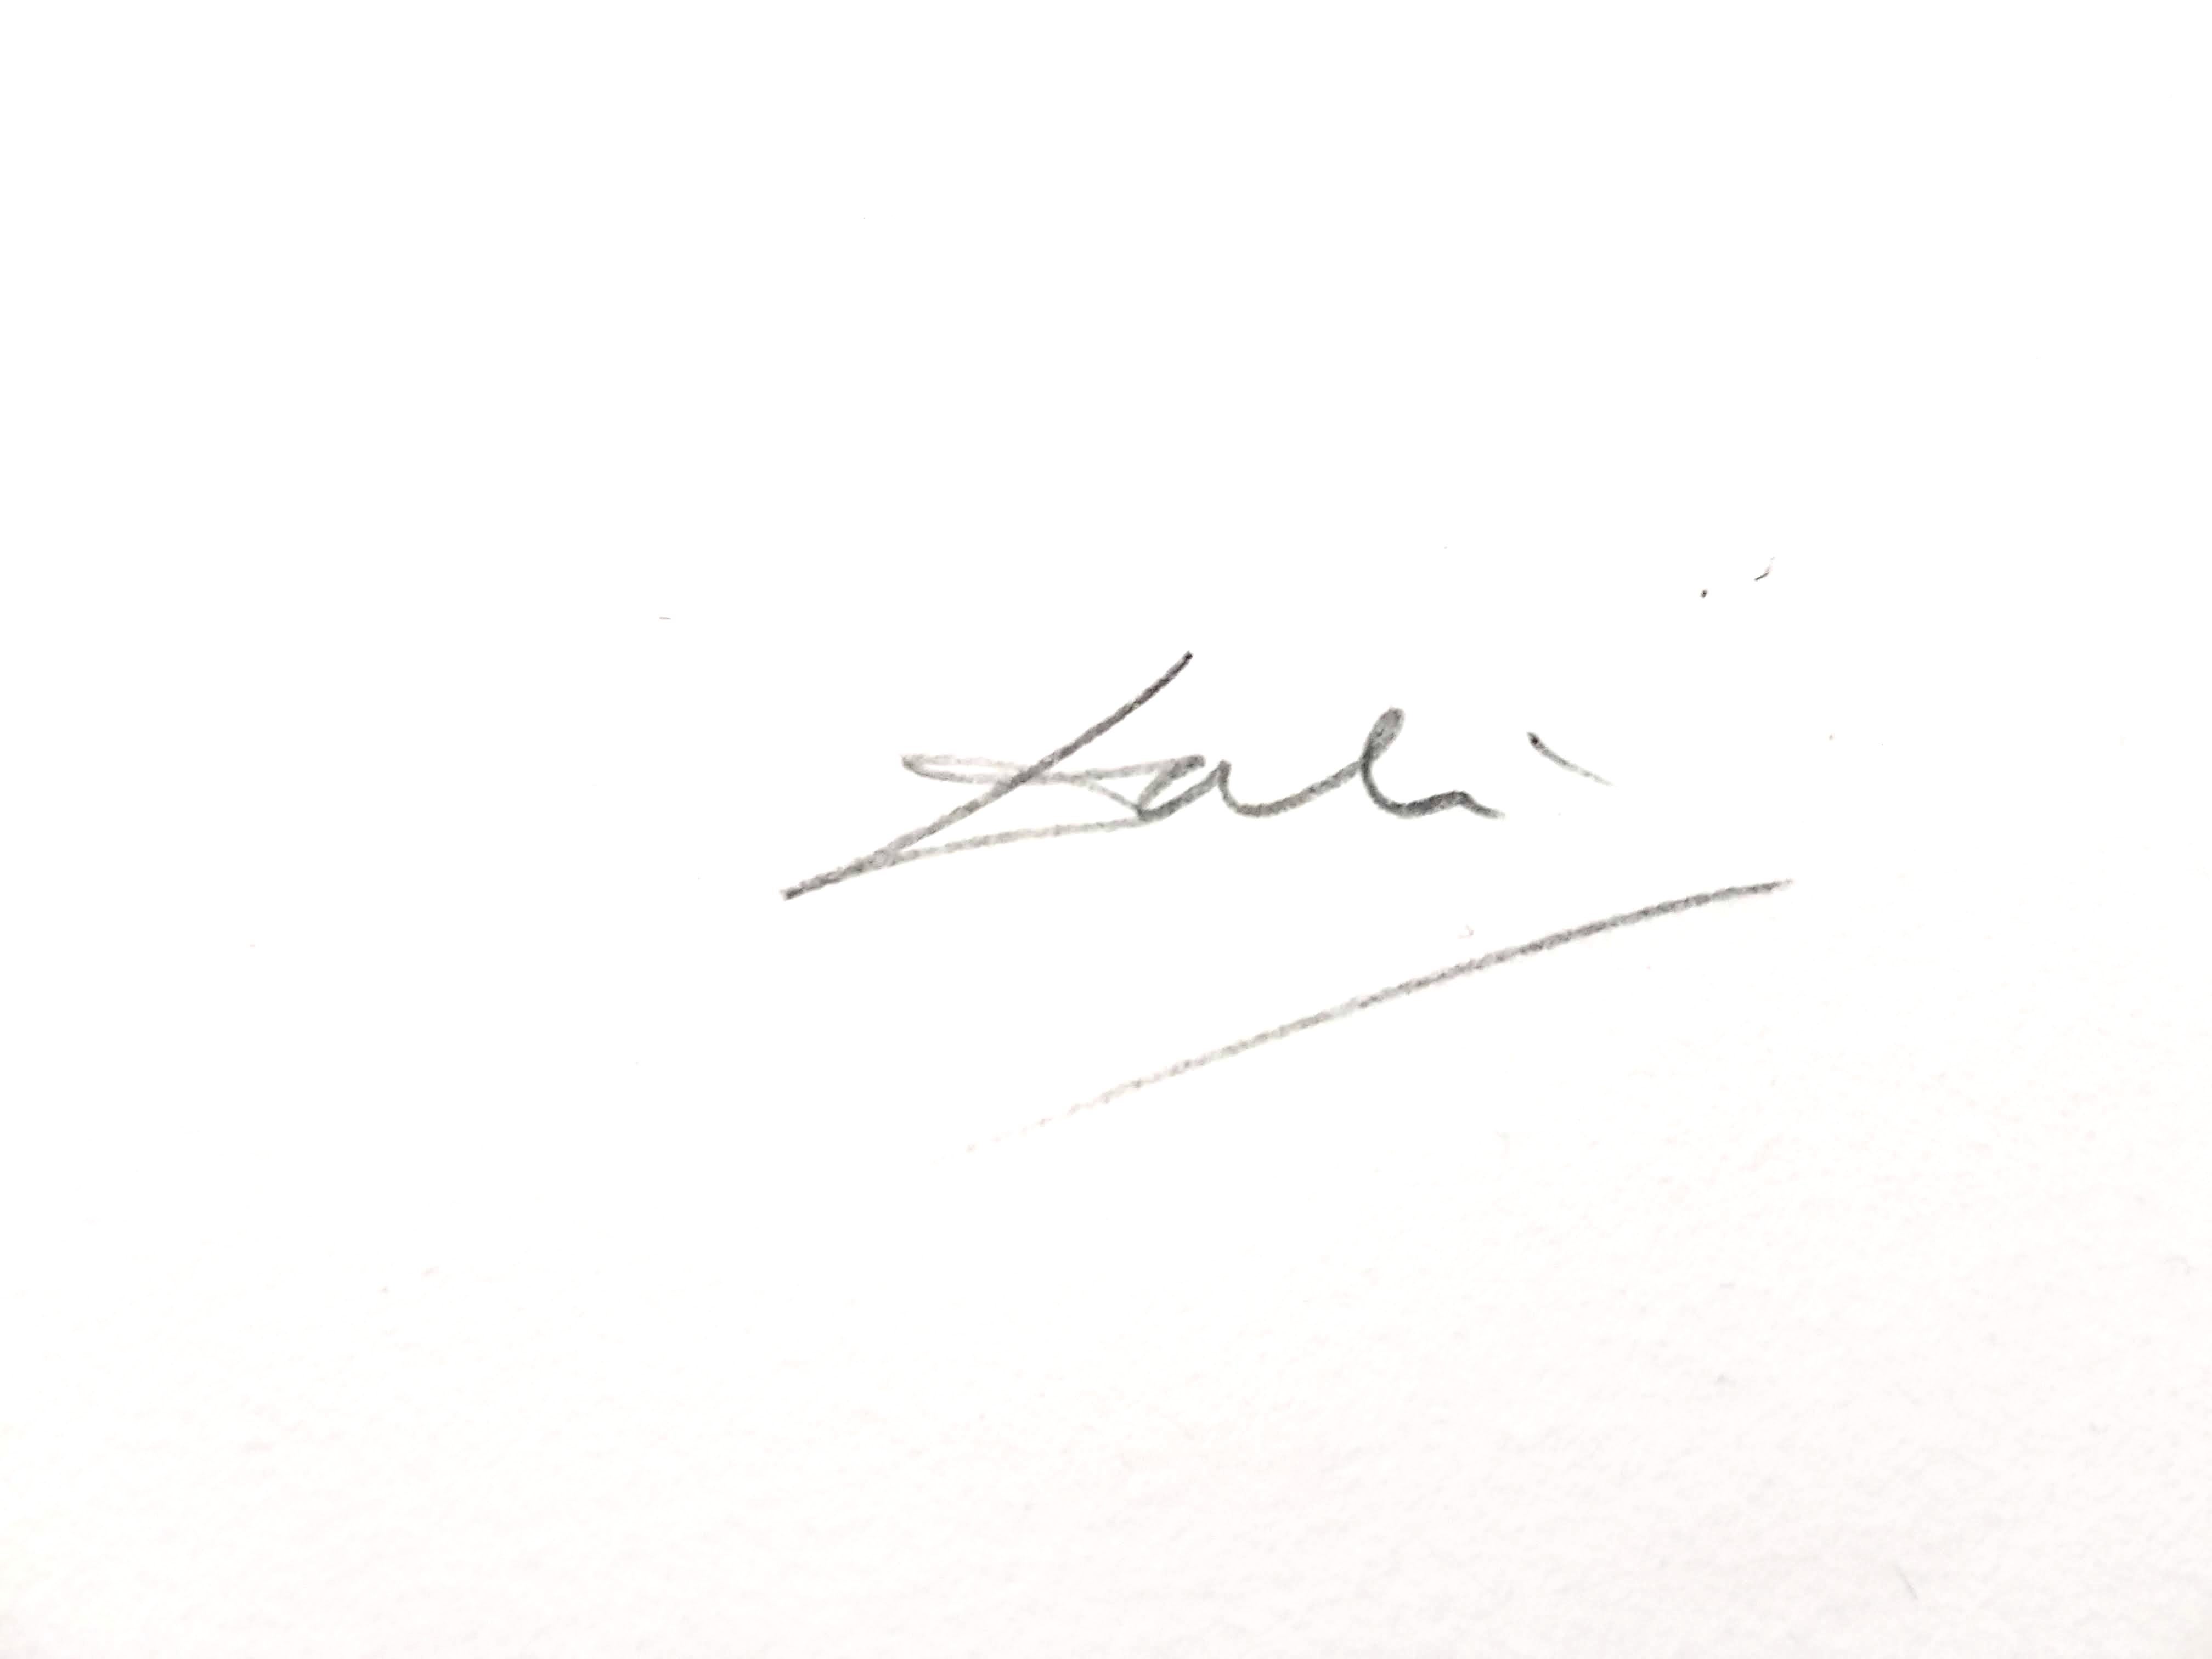 Salvador Dali – Pflaumenfarbene – Original handsignierte Lithographie
1969
Abmessungen: S. 57 x 37 cm
Blatt: 75 x 56 cm 
Handsigniert, EA (Epreuve d'Artiste)
Ausgezeichneter Condit
Referenz: Feld 69-11 (Seite 54)